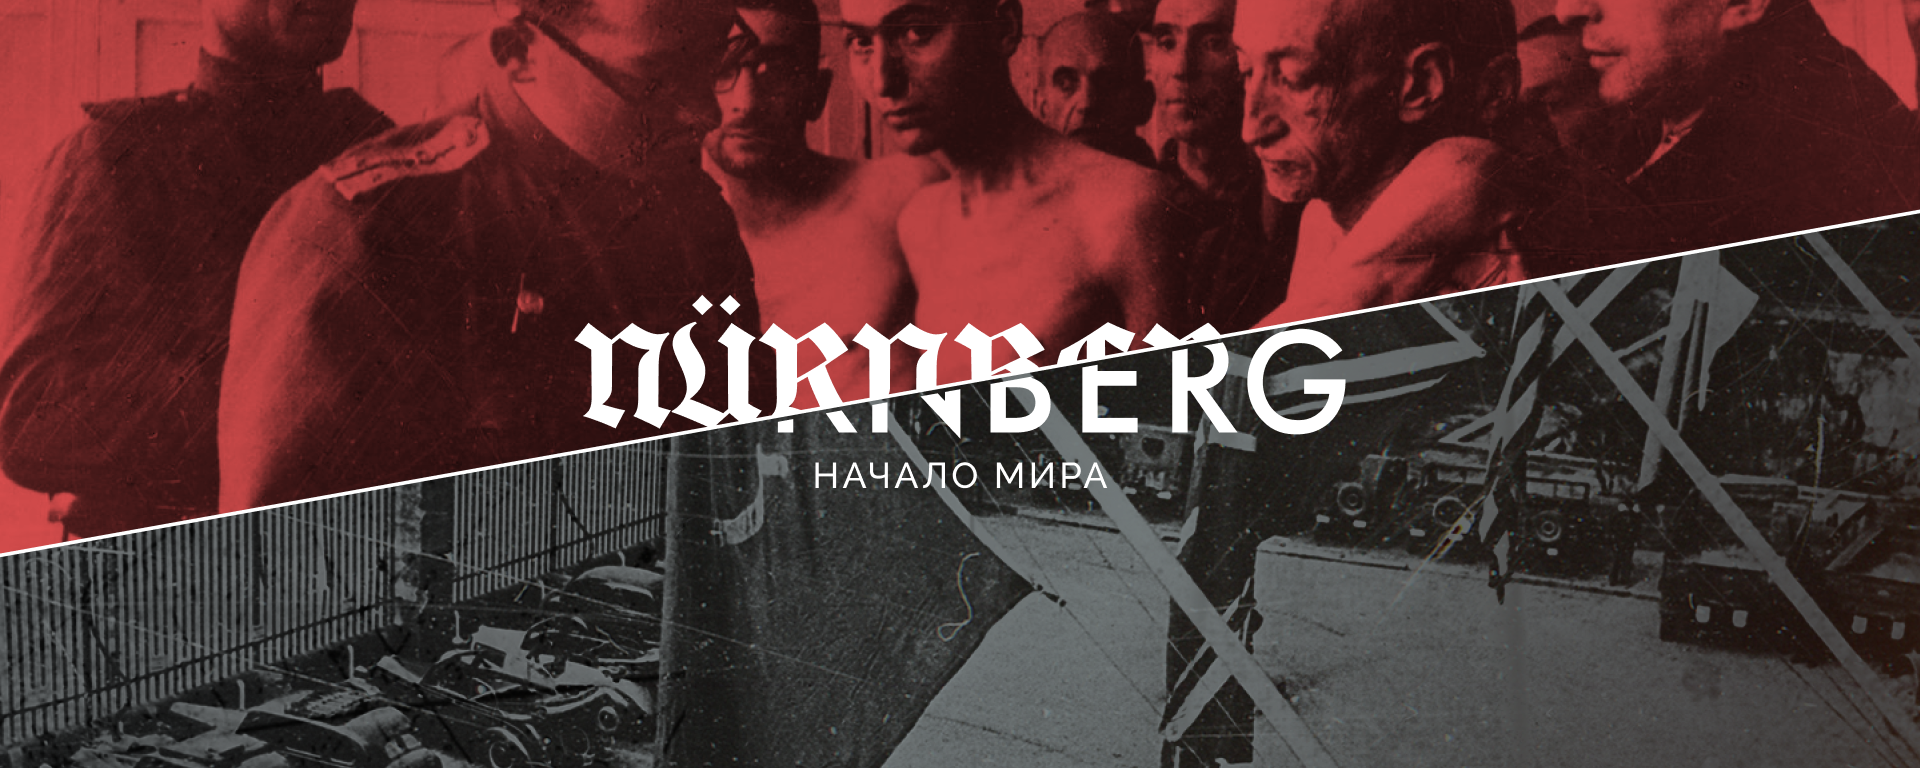 РИА Новости запустило мультимедийный проект о Нюрнбергском процессе - Sputnik Латвия, 1920, 19.11.2020